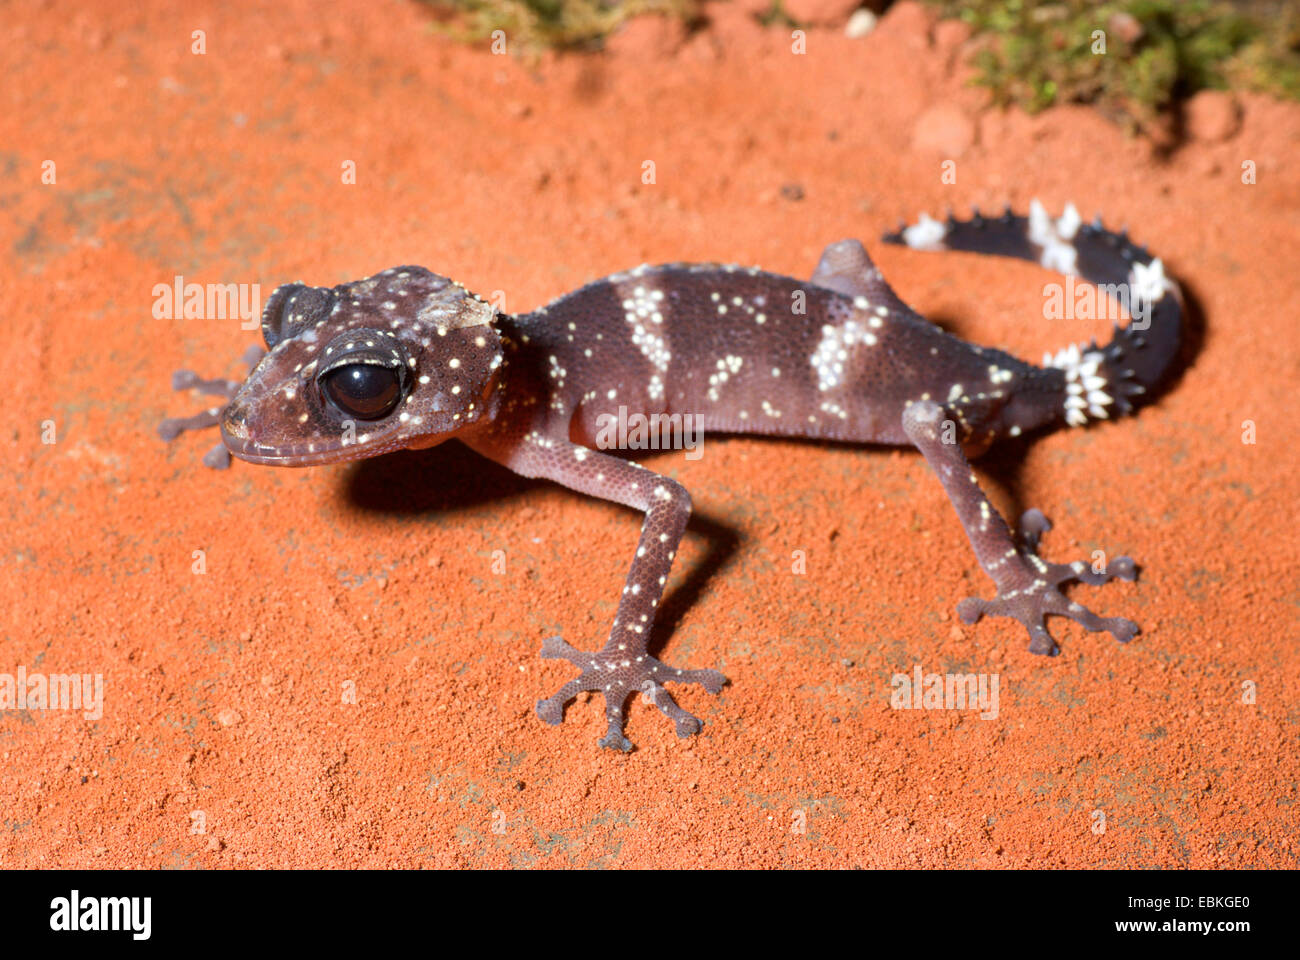 Madagascar Big Eyed Gecko (Paroedura masobe), sitting in the sand Stock Photo